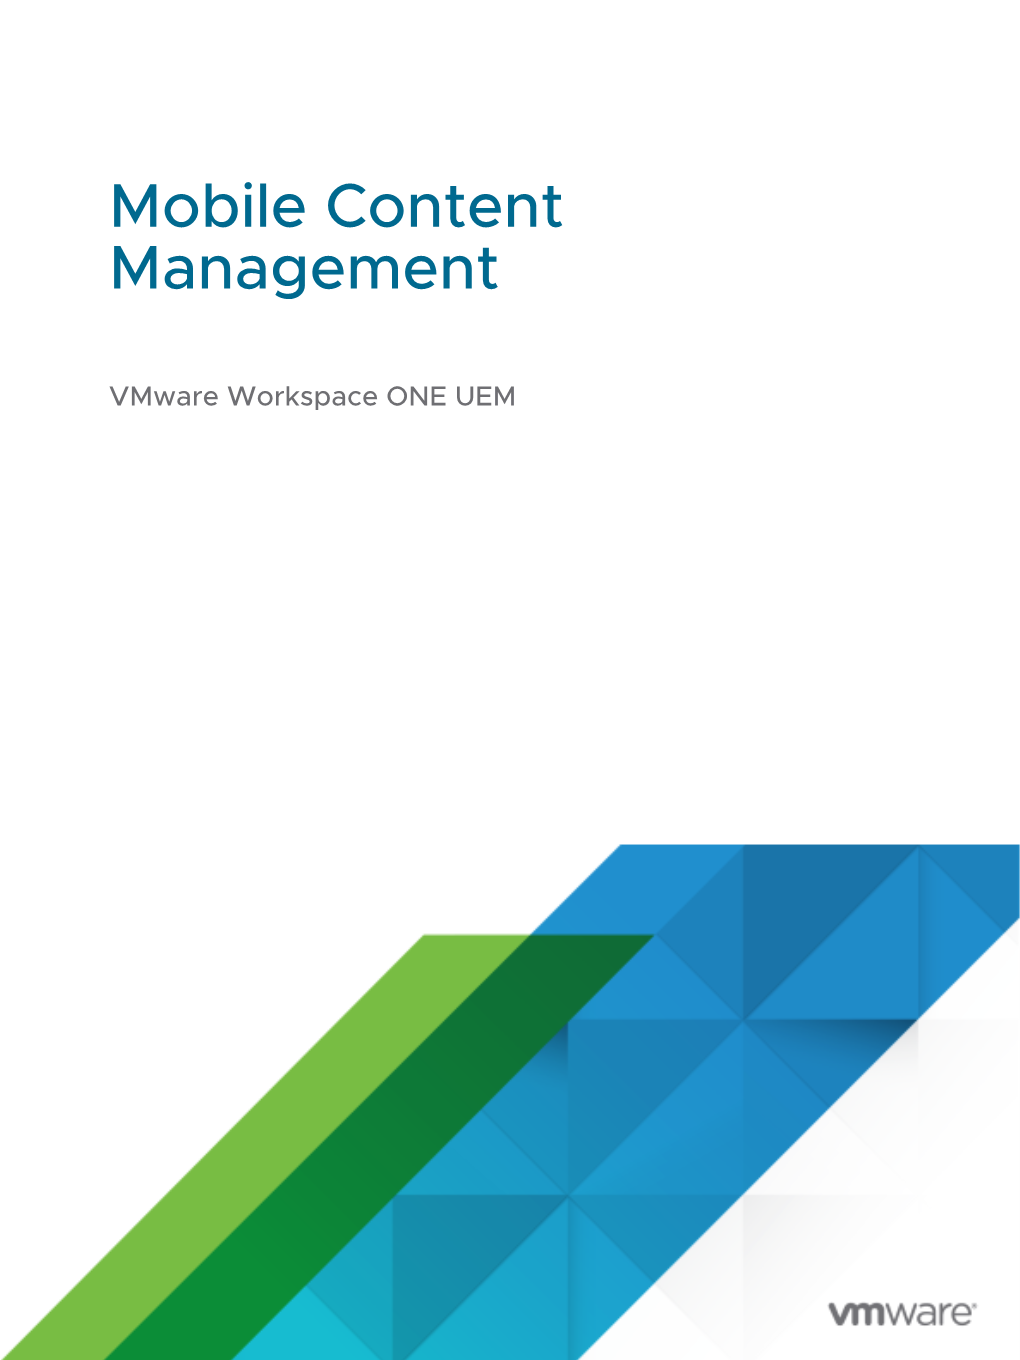 Mobile Content Management